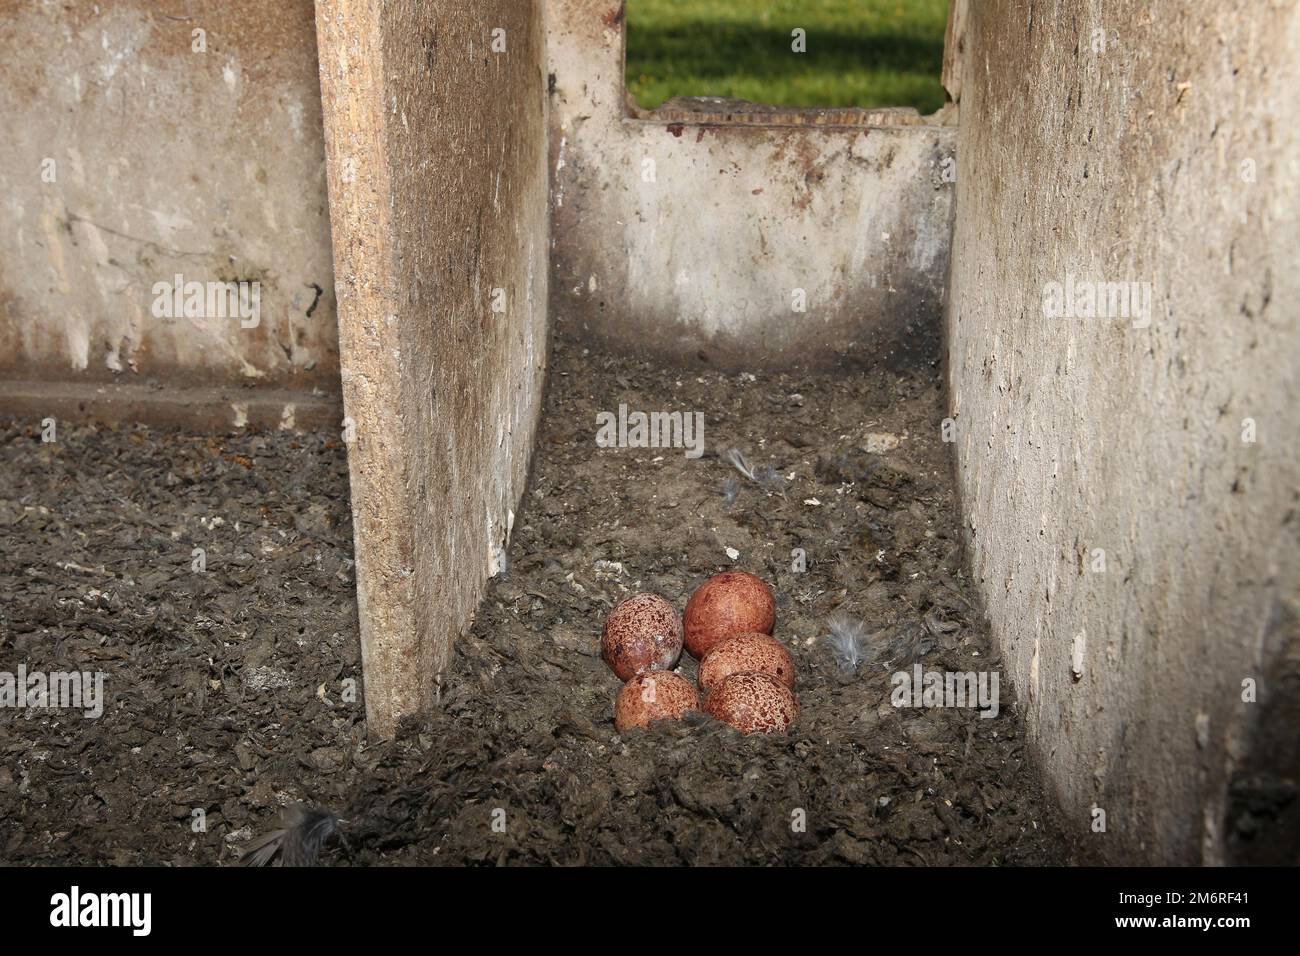 Falco-Tinnunculus-Eier in einer Nestbox in einer Feldscheune, Allgaeu, Bayern, Deutschland Stockfoto